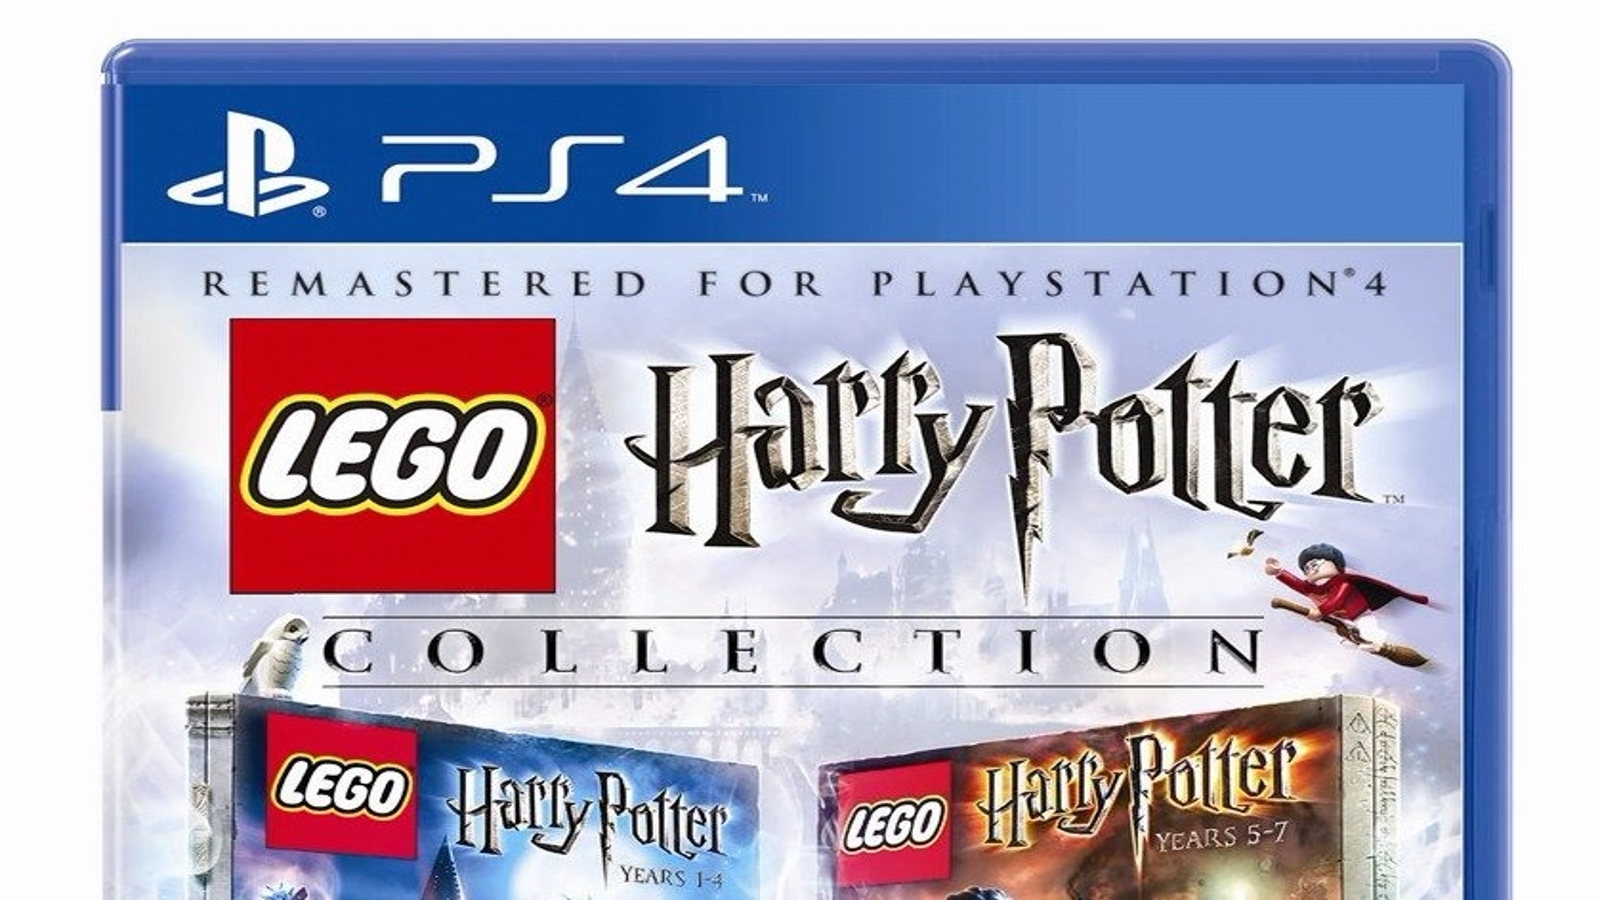 Lego Harry Potter tendrá remasterización para PlayStation 4